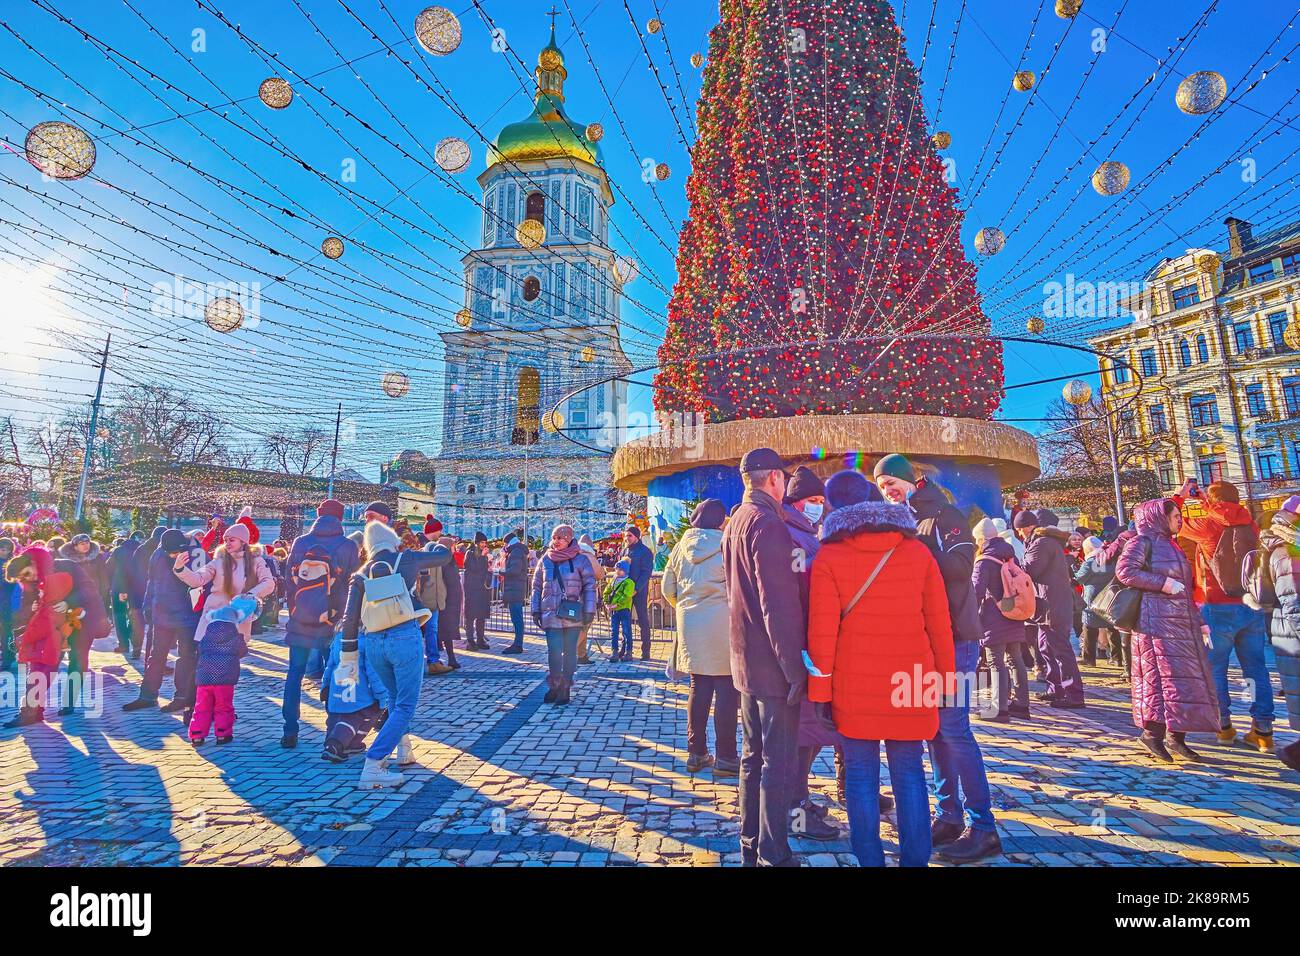 KIEV, UCRANIA - 2 DE ENERO de 2022: El árbol de Navidad principal con decoraciones de colores brillantes contra el campanario medieval de la Catedral de Santa Sofía, el 2 de enero Foto de stock